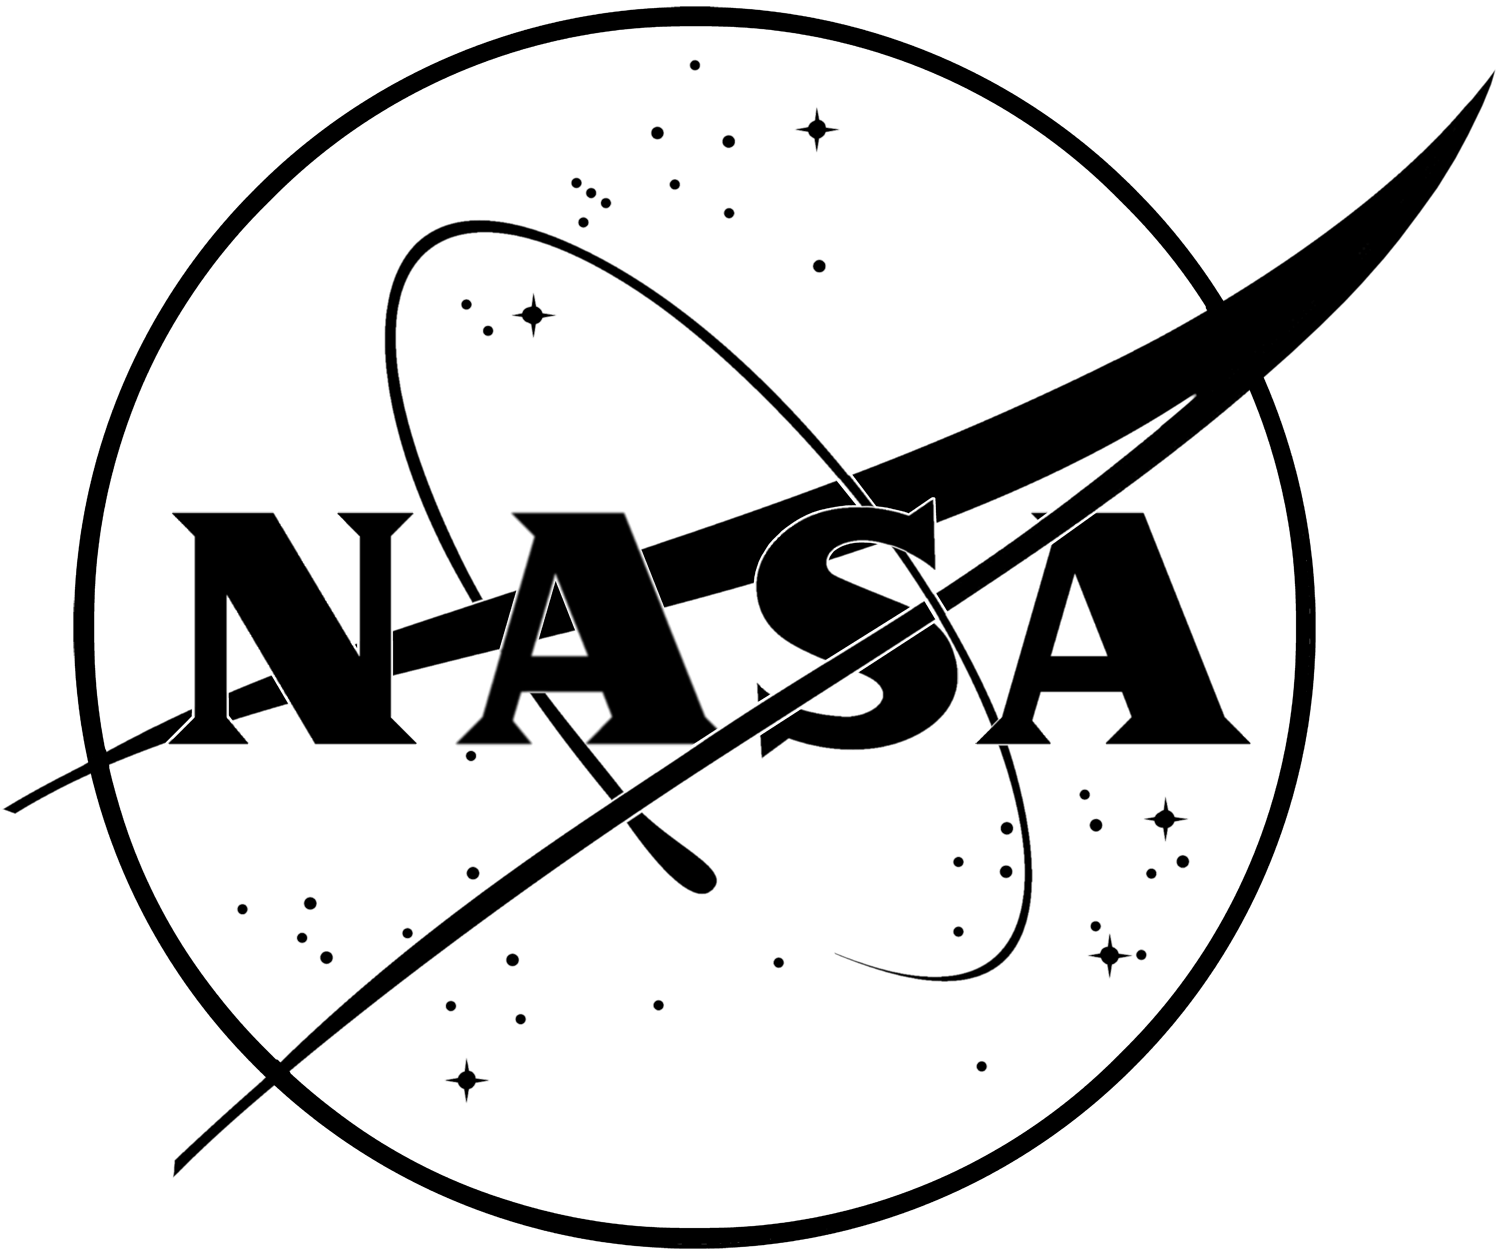 Transperat NASA High Resolution Logo - Nasa Black And White Logo Png Image